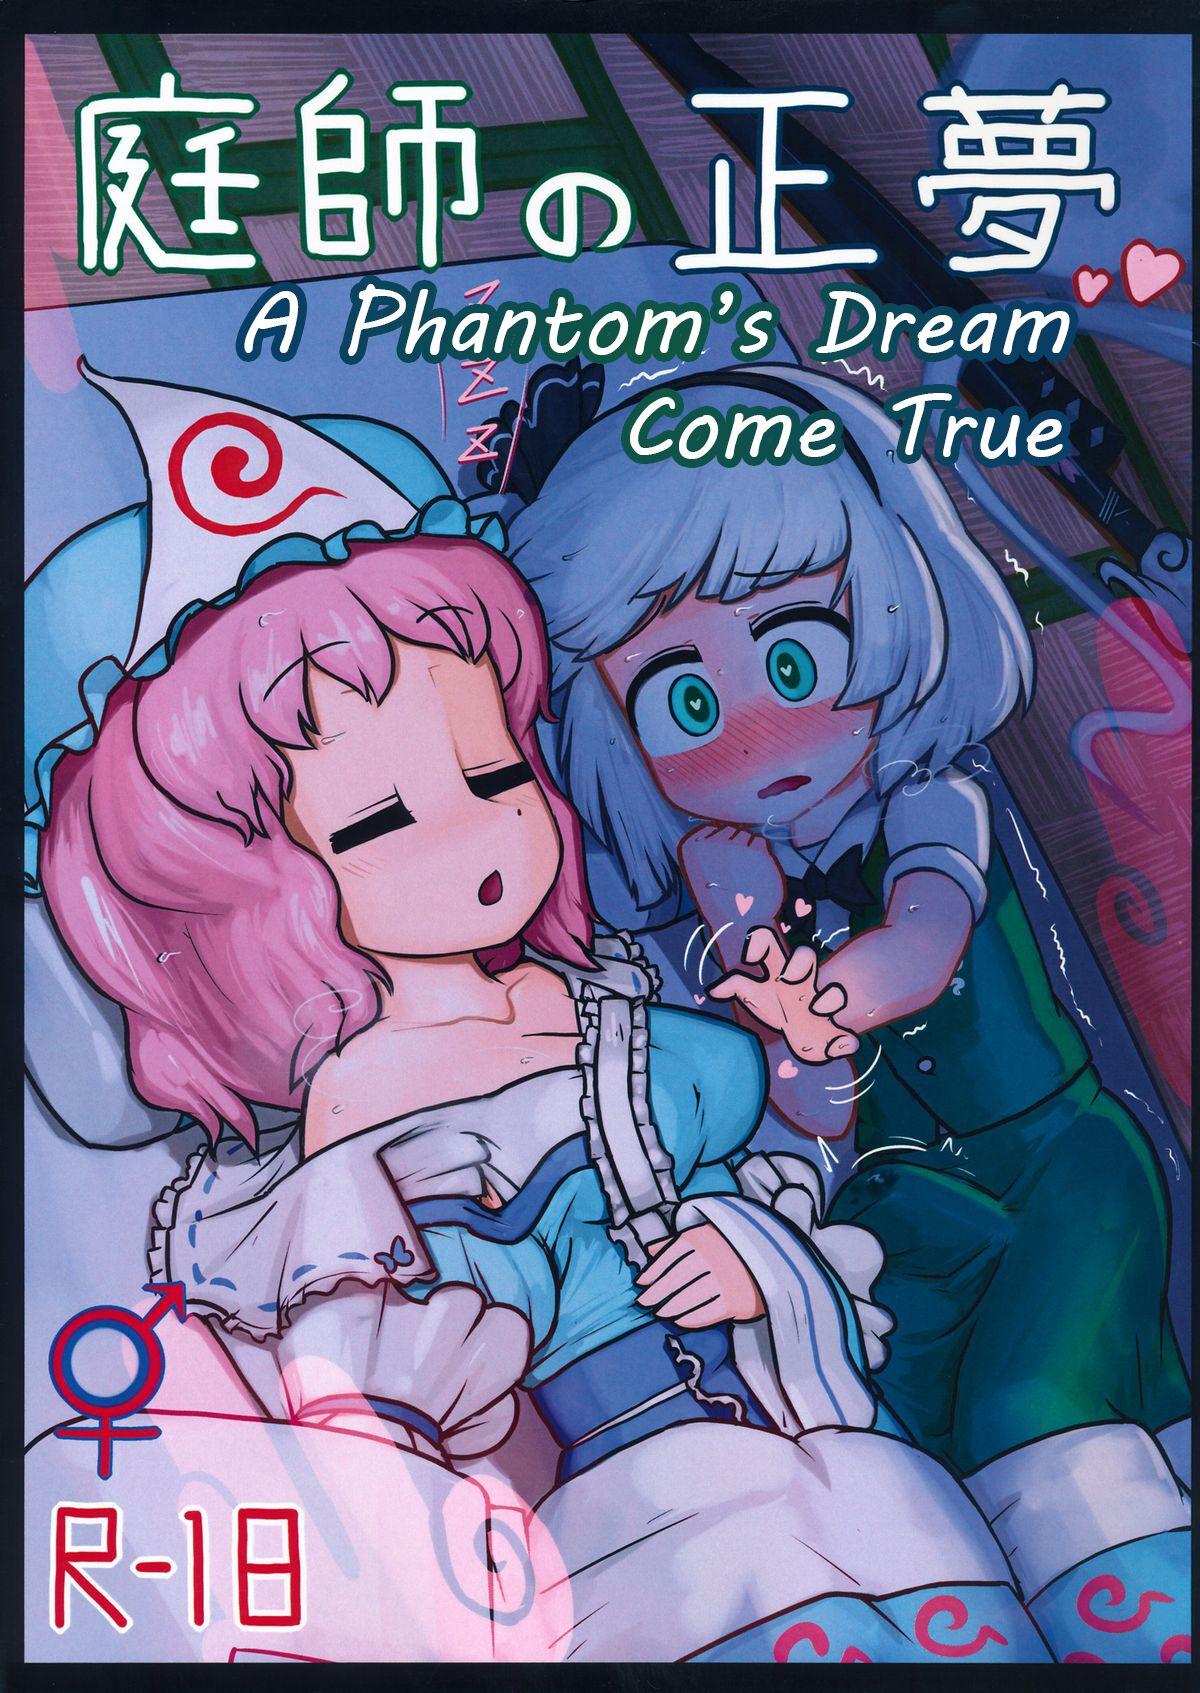 A Phantom's Dream Come True 1